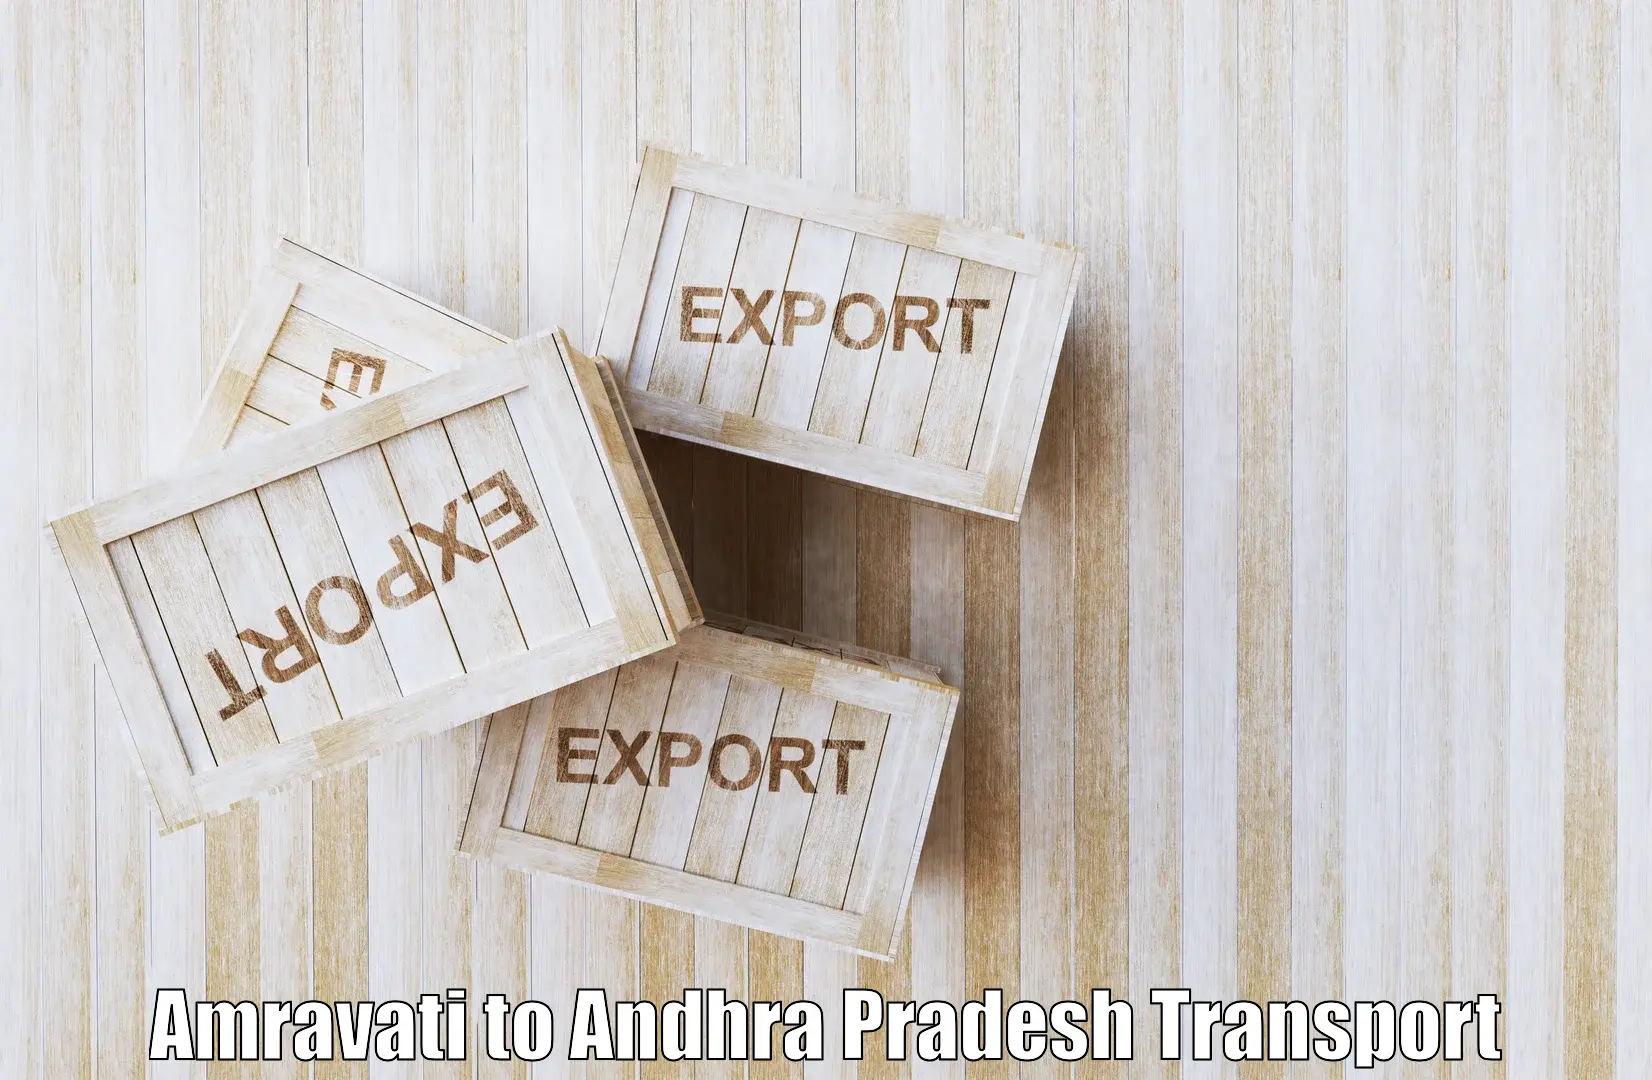 Online transport in Amravati to Vidyanagar Nellore